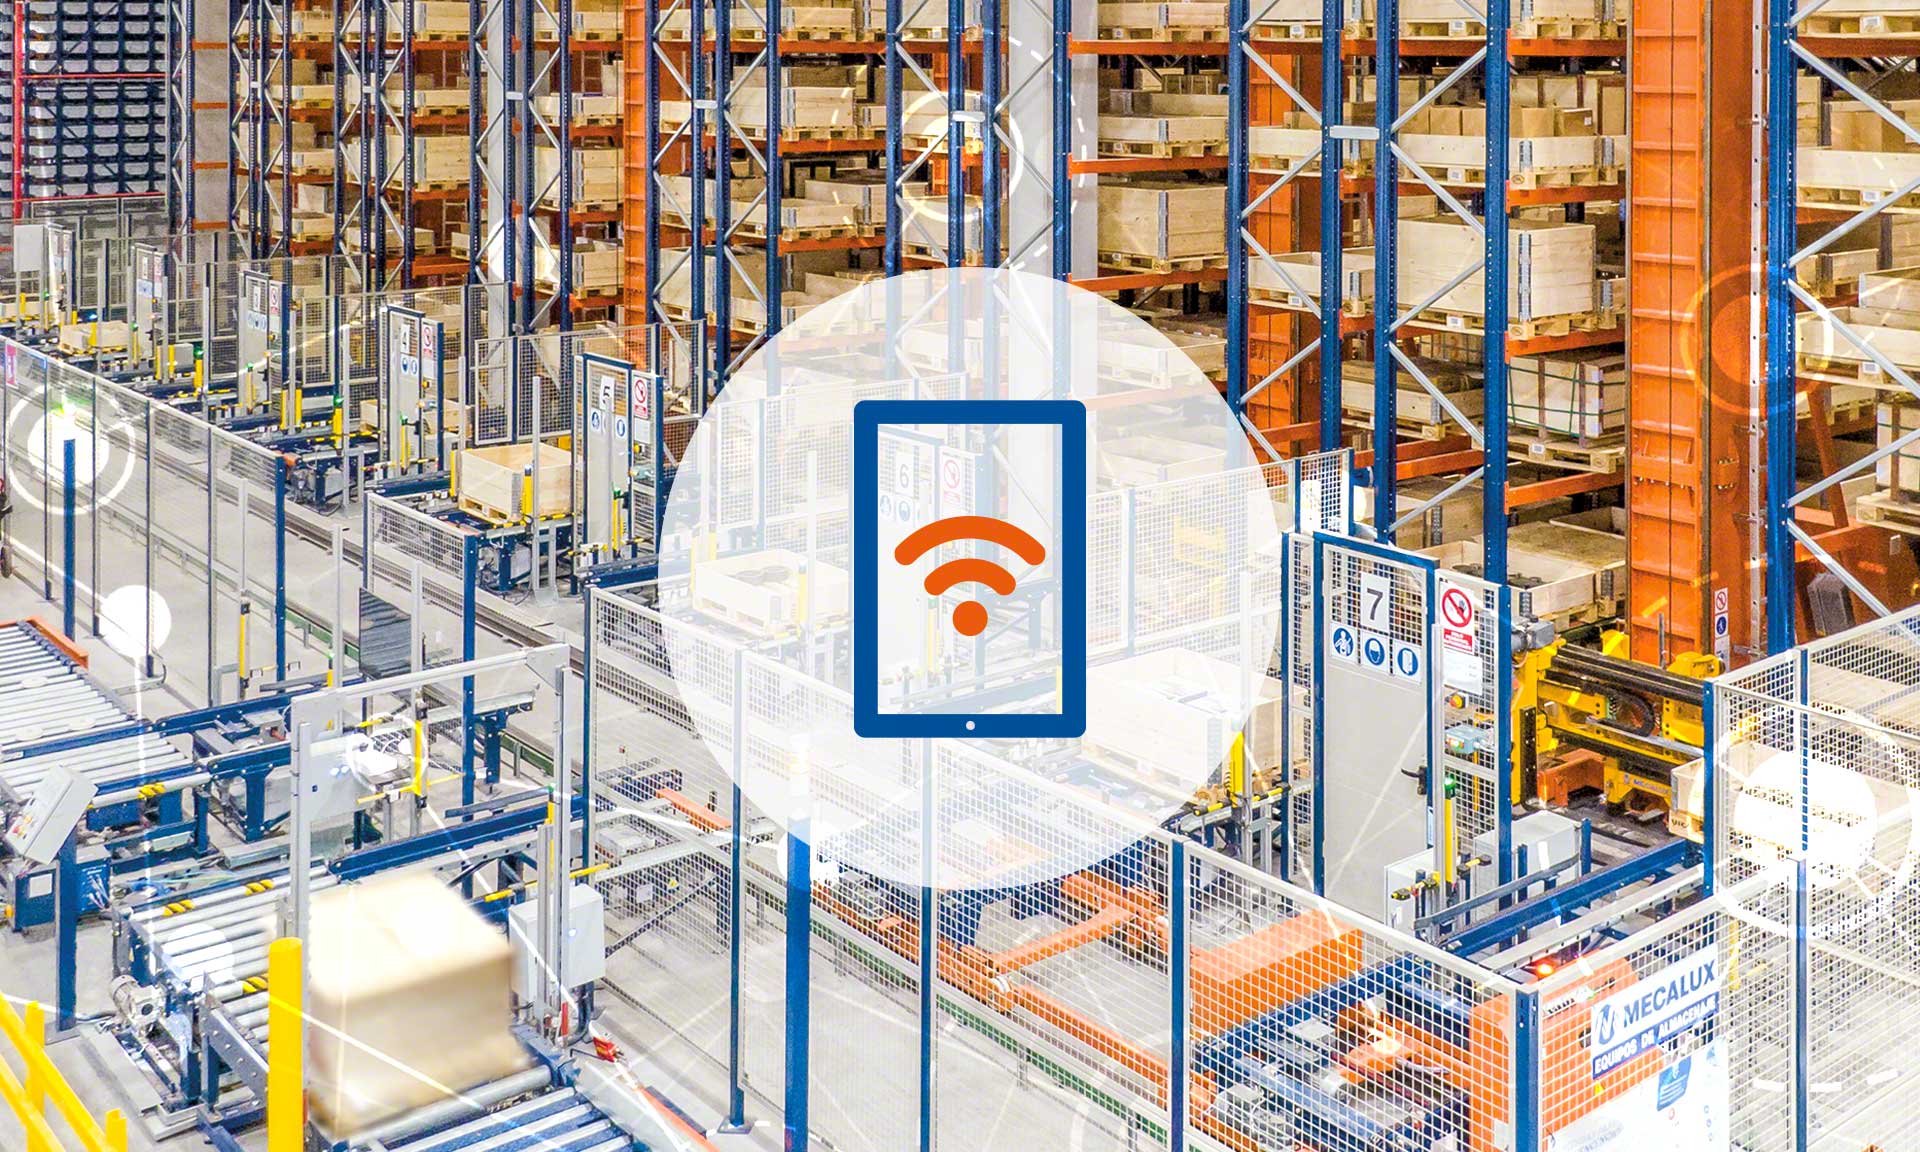 倉庫WiFi是用於物流設施和生產中心的無線以太網技術